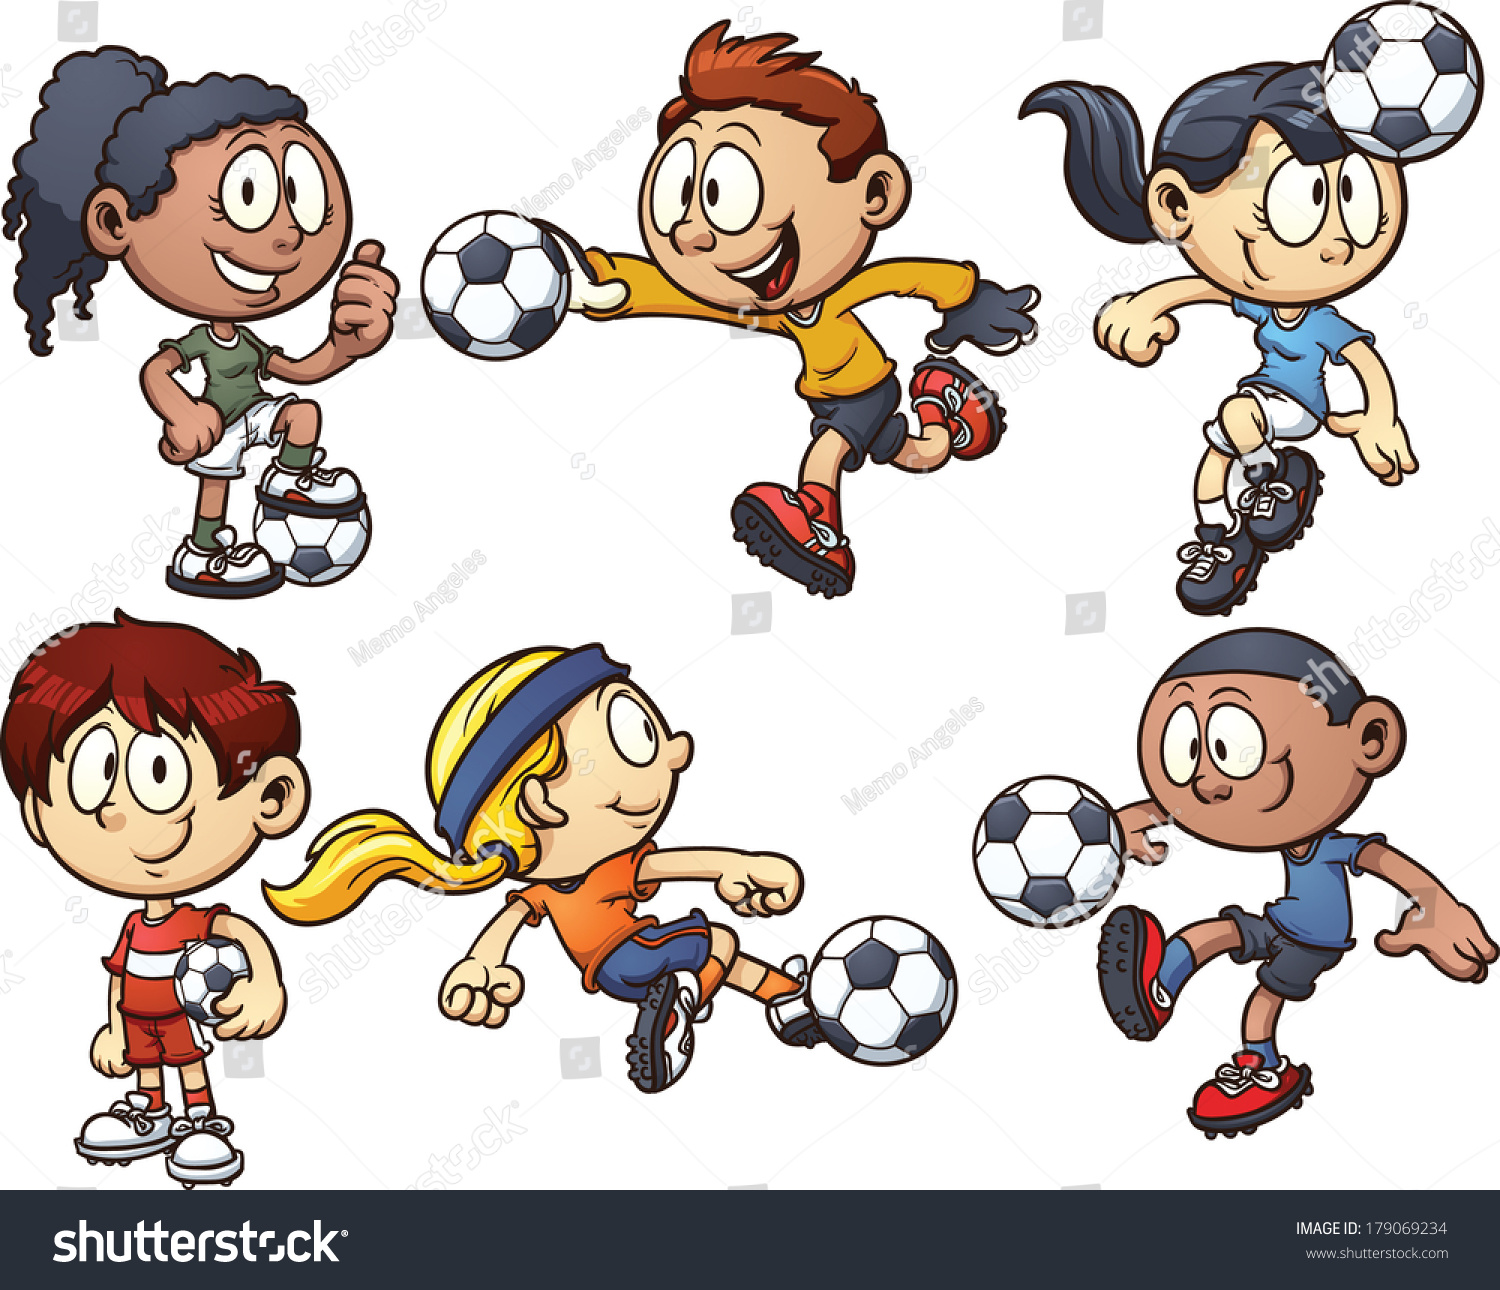 Эстафета с мячом картинка с футболистами